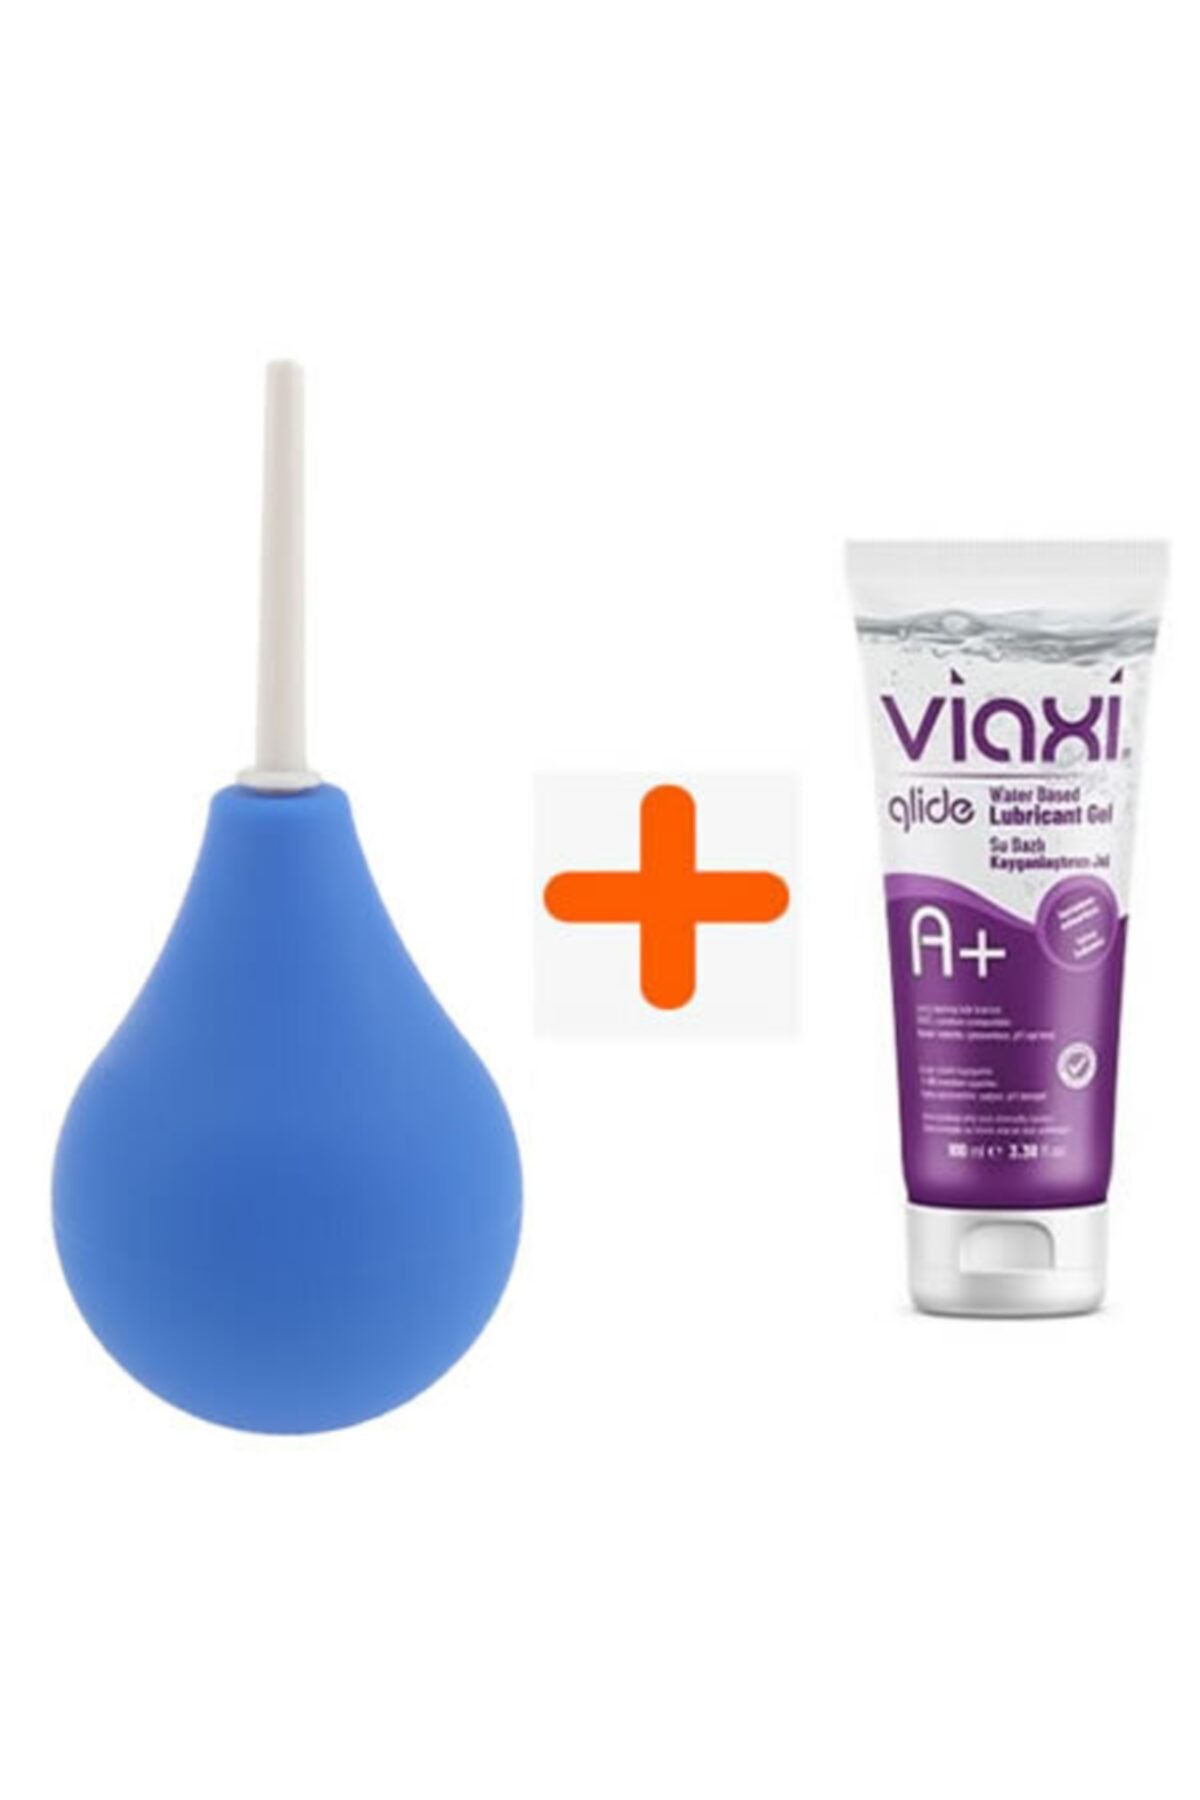 Viaxi Glide A+ Doğal Kayganlaştırıcı Jel + Anal Temizleme Pompası 160 ml  Fiyatı - Trendyol